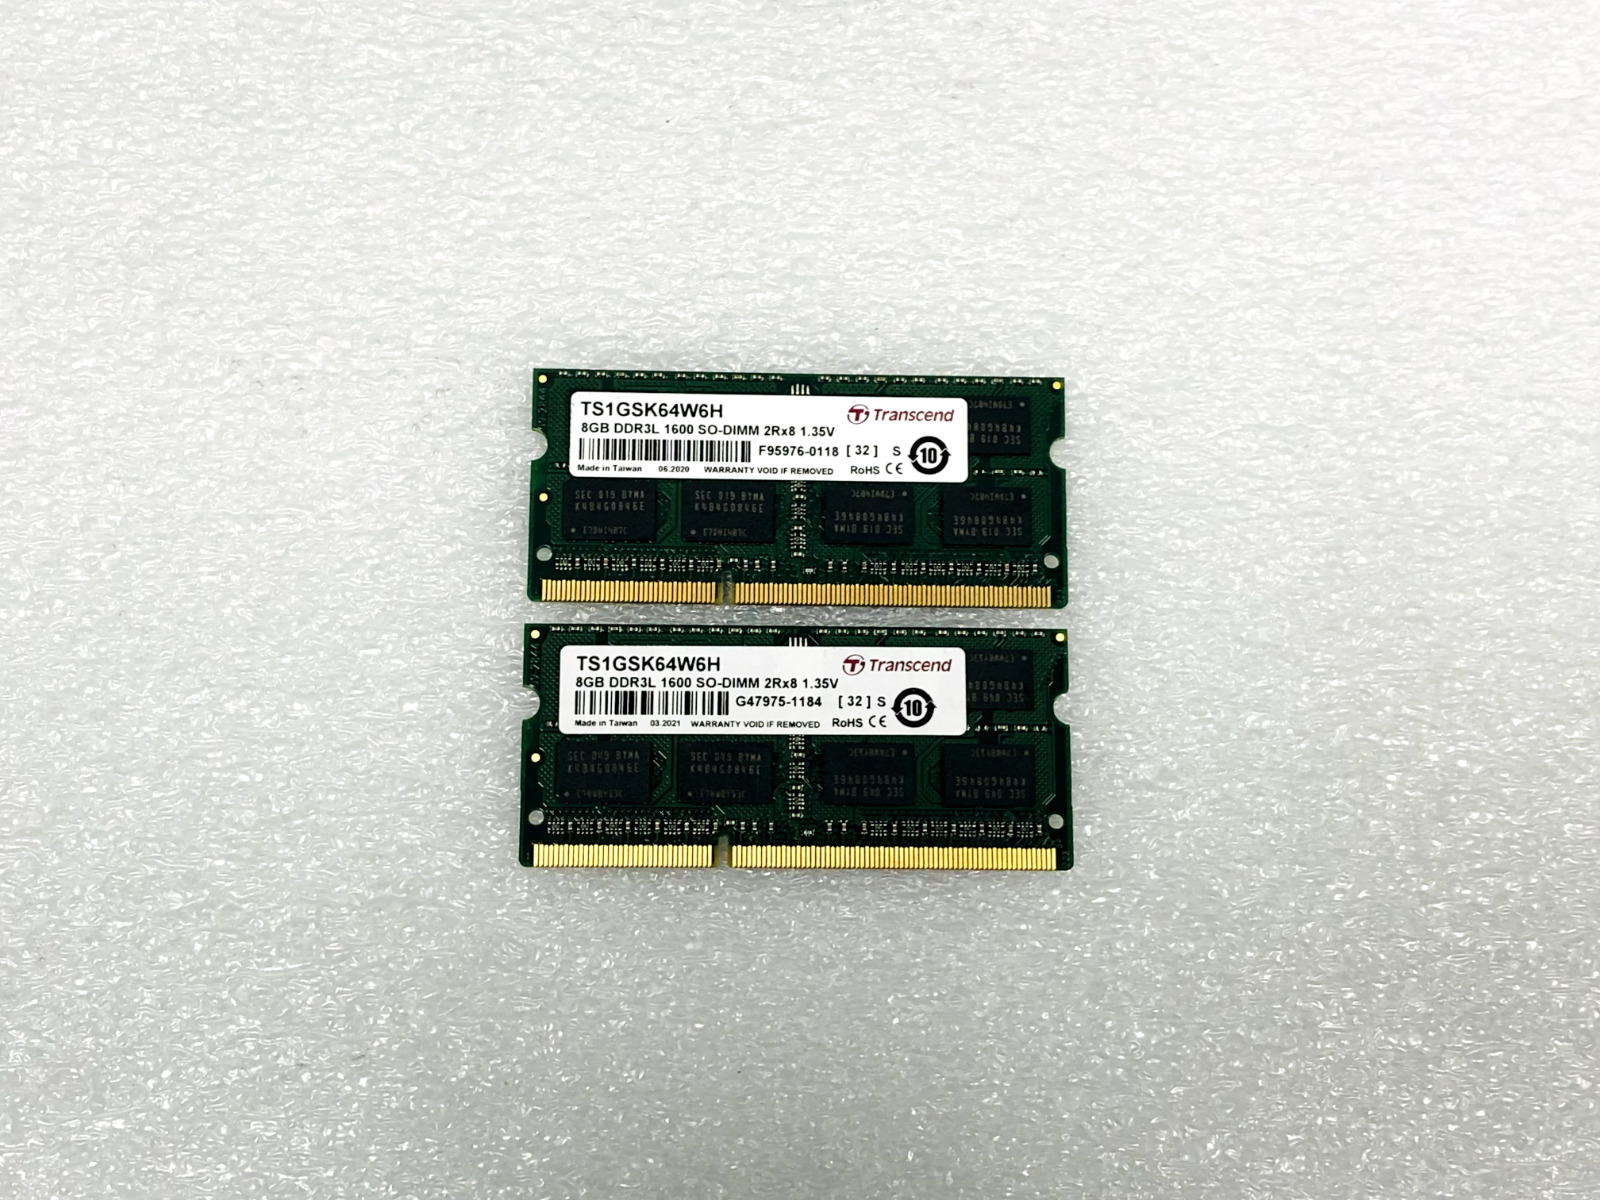 LOT OF 2 TRANSCEND TS1GSK64W6H 16GB (2x8GB) DDR3L 1600 SODIMM 2Rx8 SDRAM MEMORY